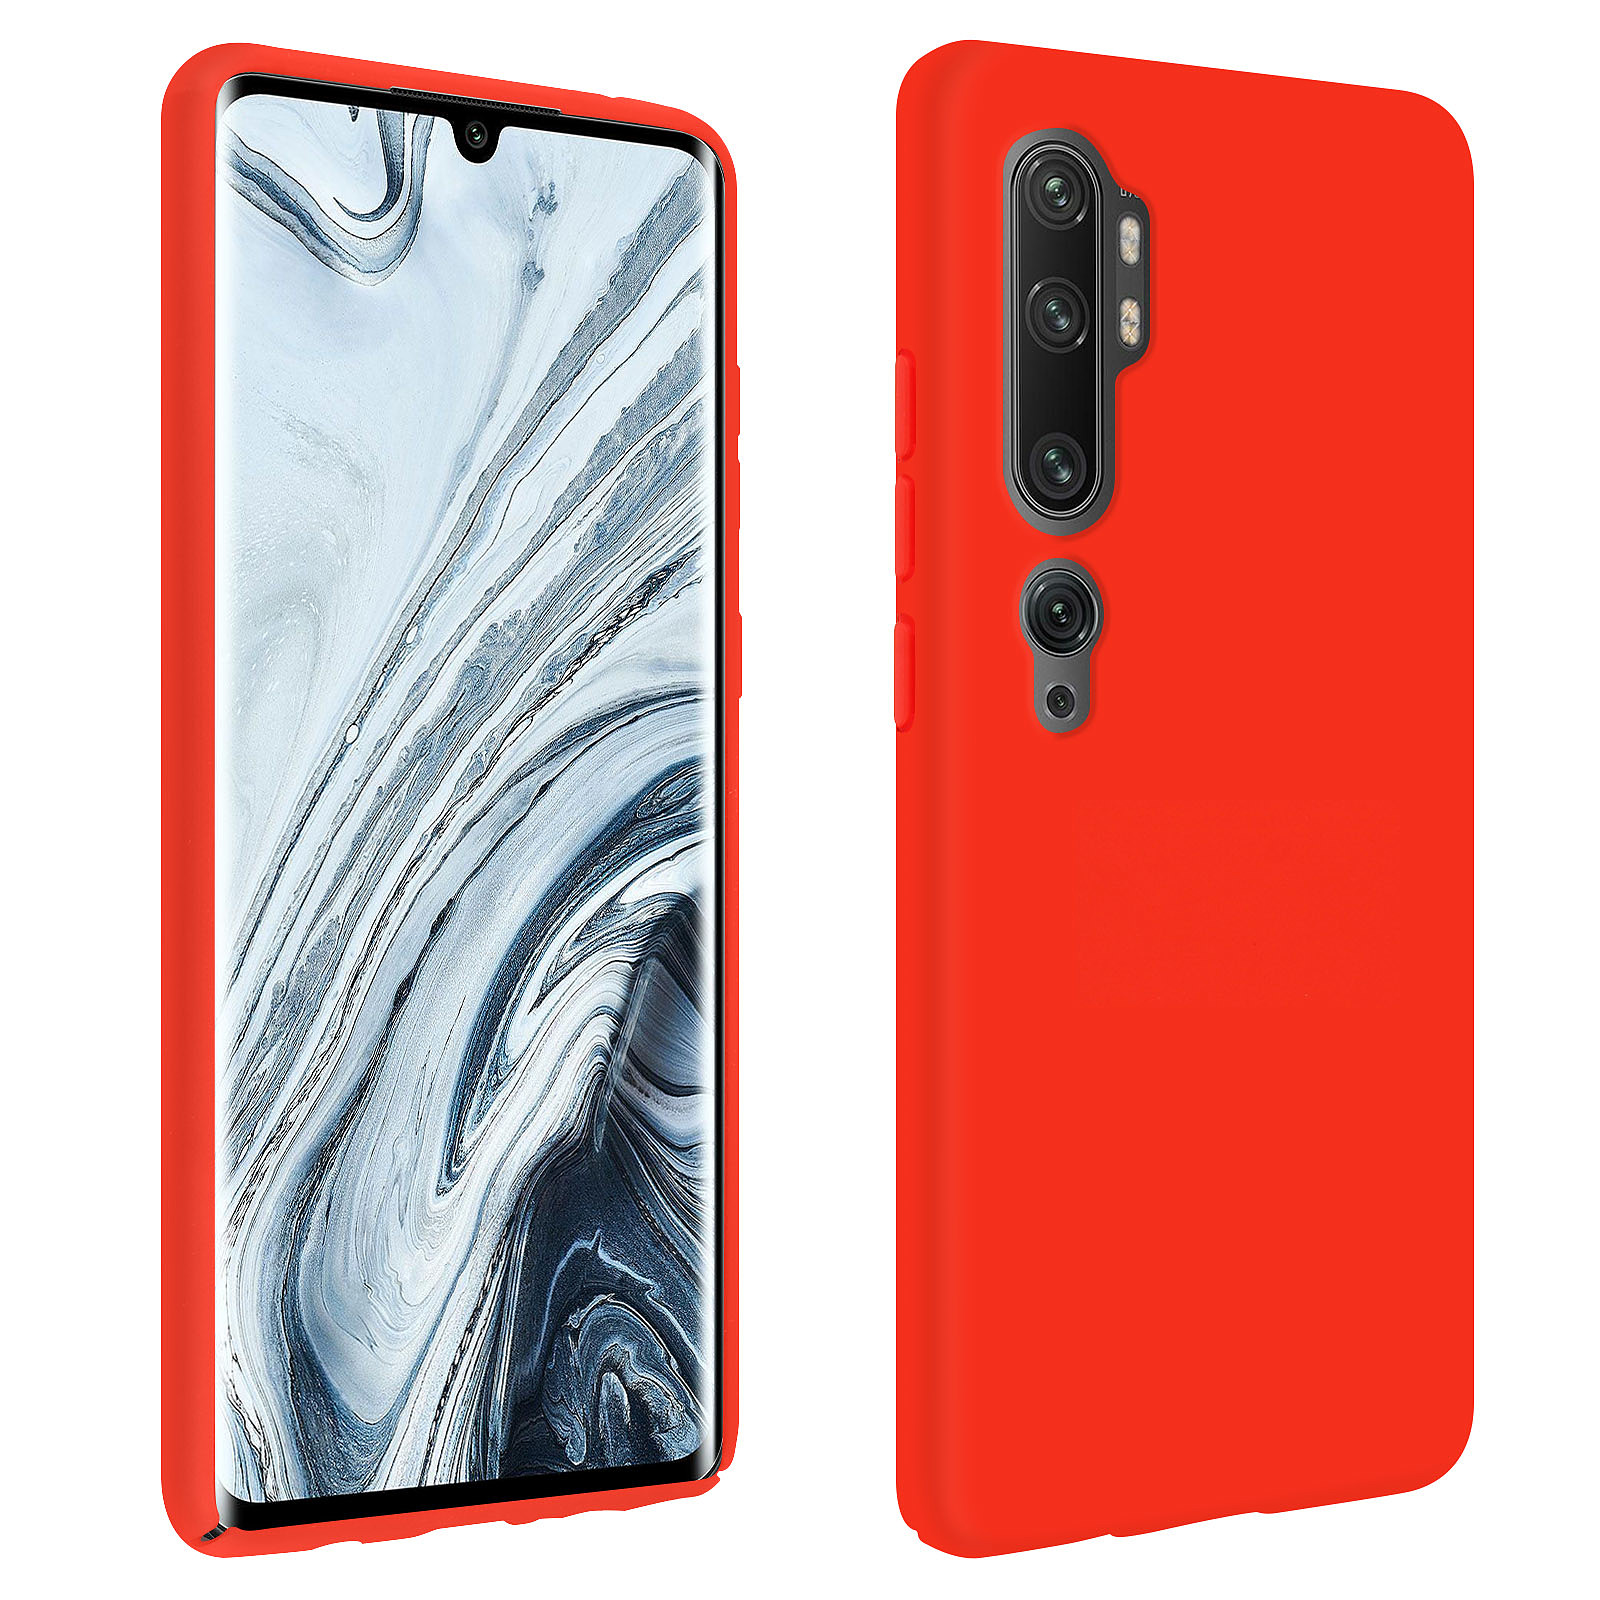 Avizar Coque Pour Xiaomi Mi Note 10 / Note 10 Pro Semi-rigide Finition Soft Touch Rouge - Coque telephone Avizar